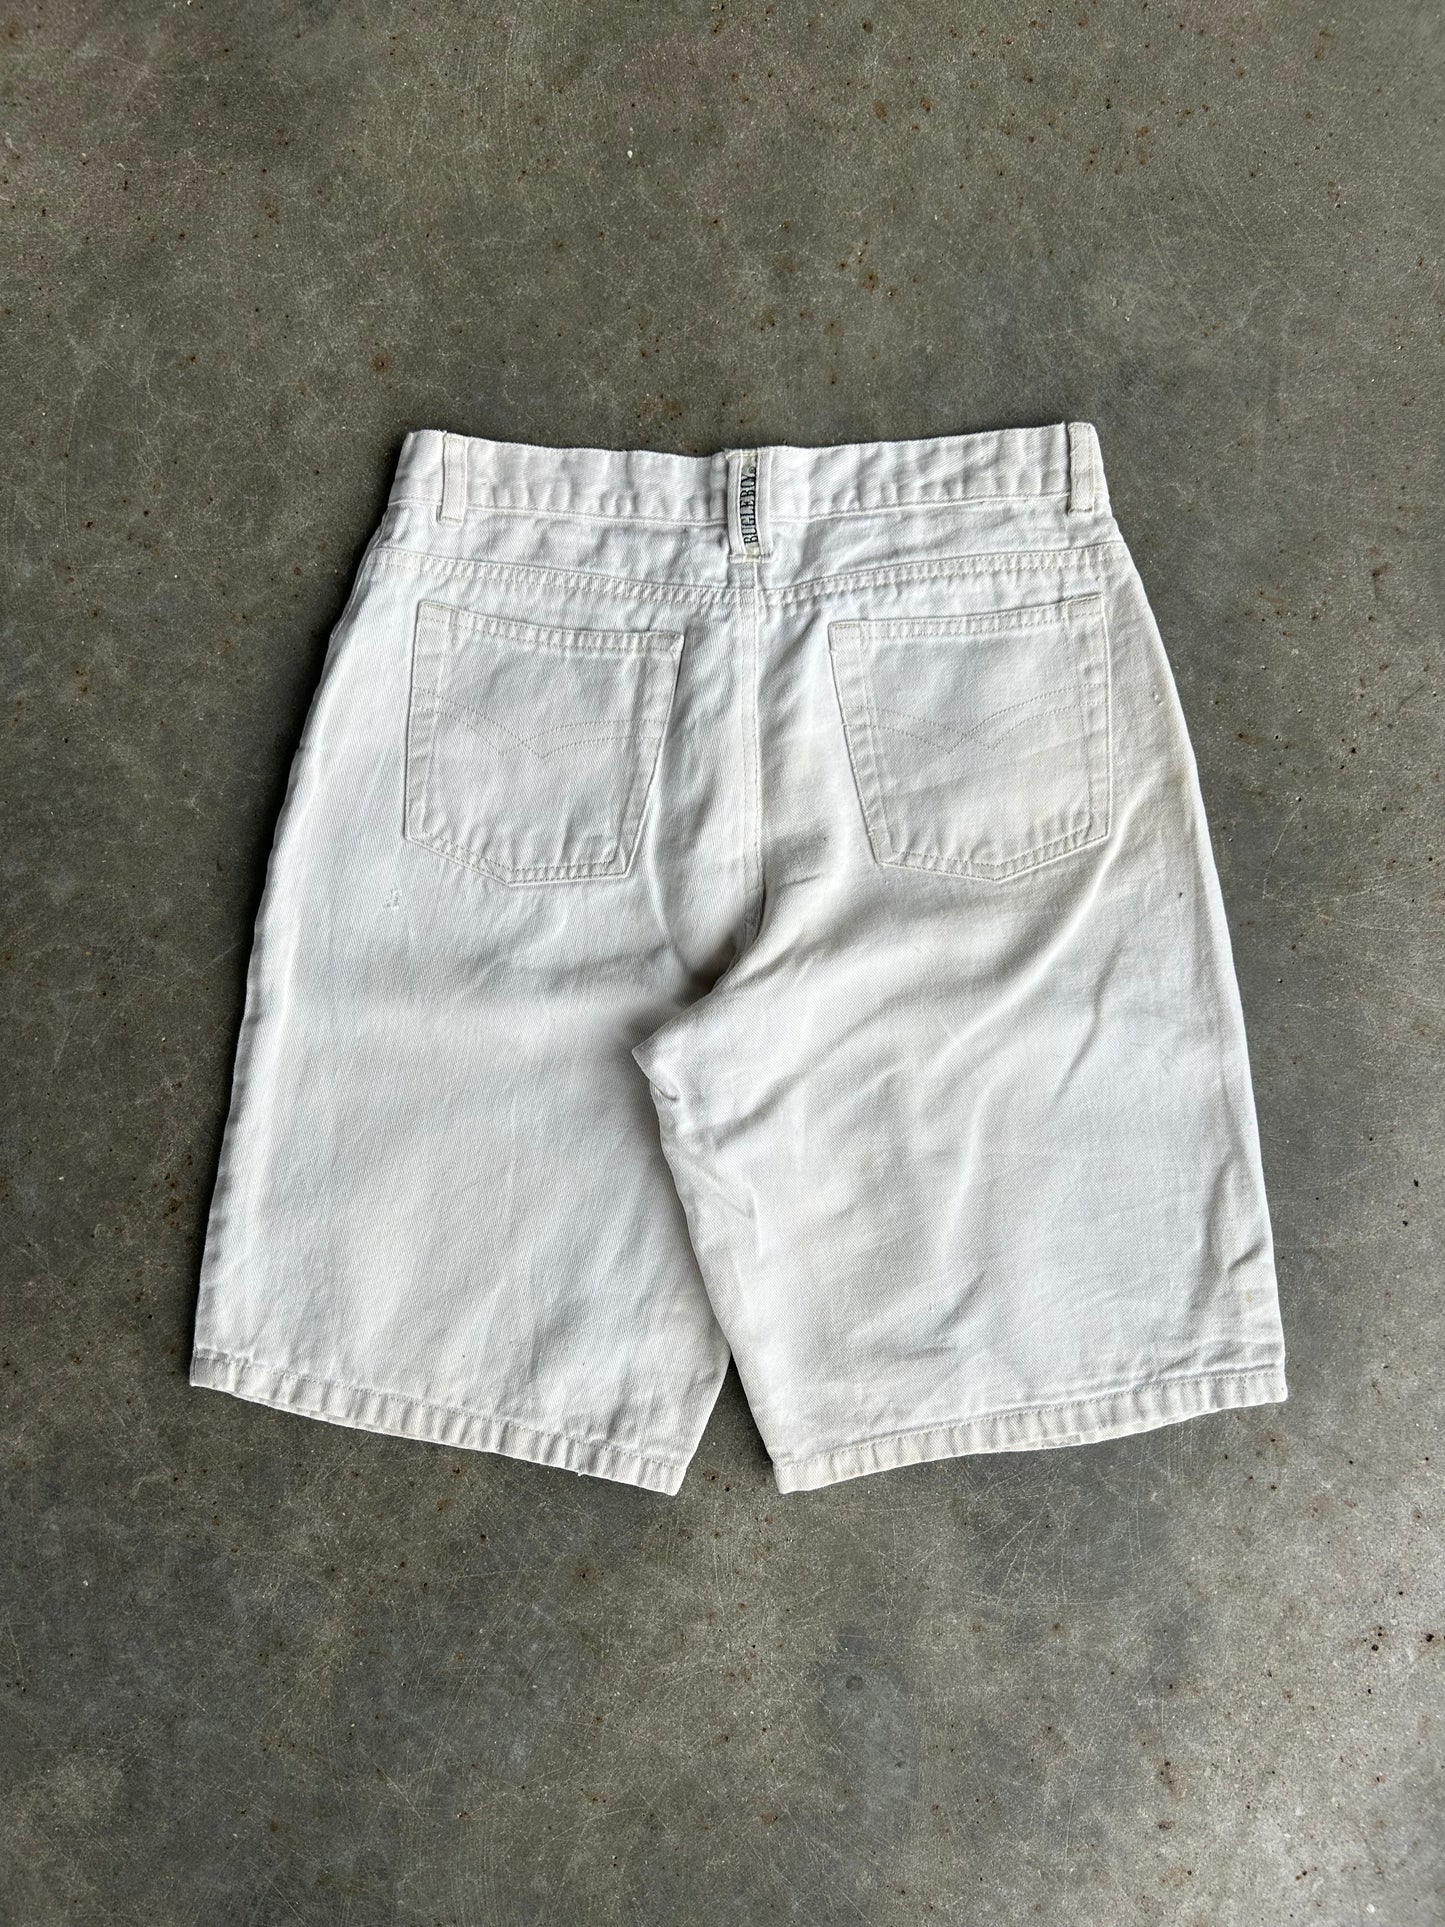 Vintage Bugleboy Shorts - 29